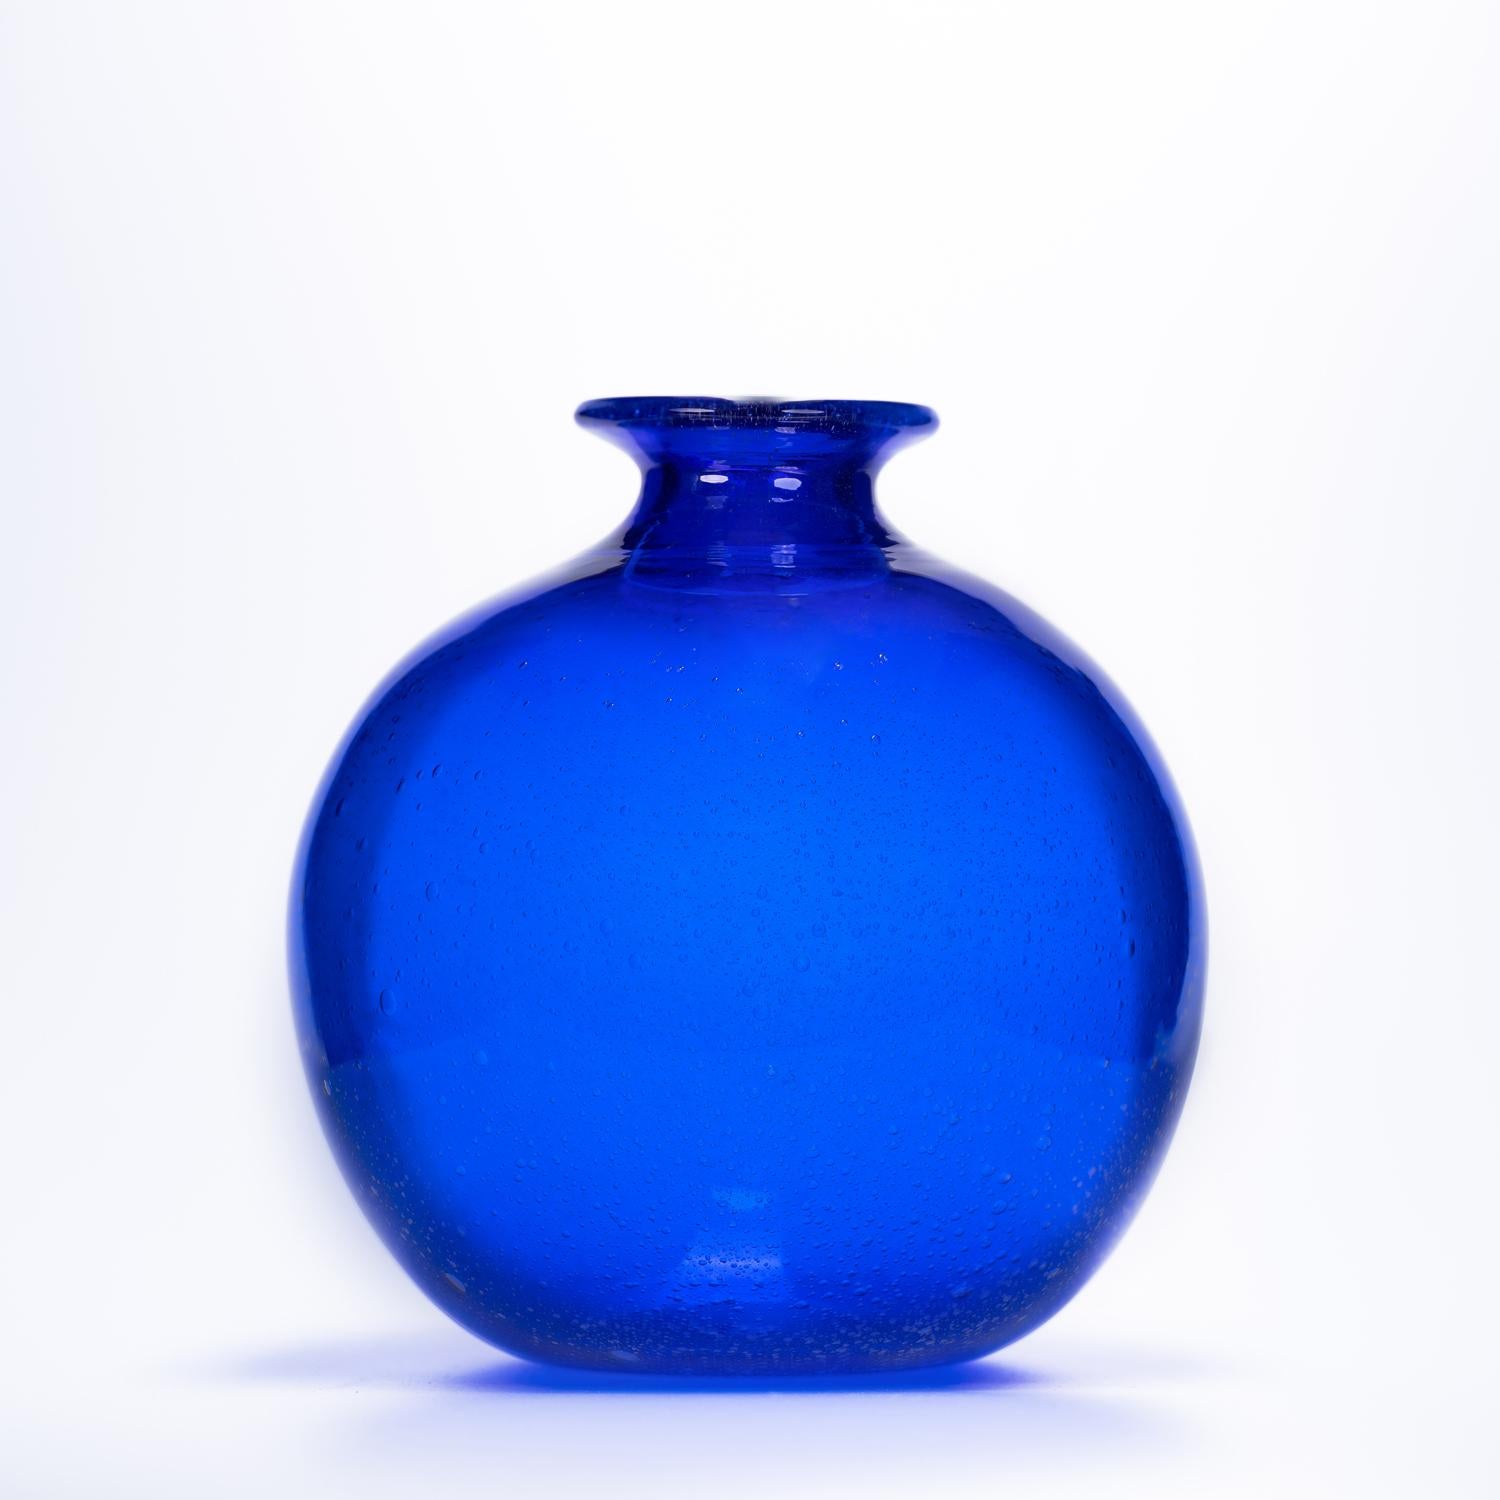 Unser Ziel ist die Emotion durch die Schaffung von 1295 MURANO Glaskunstwerken.
 
Wir freuen uns, Ihnen unsere neueste Kreation vorstellen zu können - eine atemberaubende Vase aus Murano-Glas. Diese atemberaubende Vase wurde von unserem